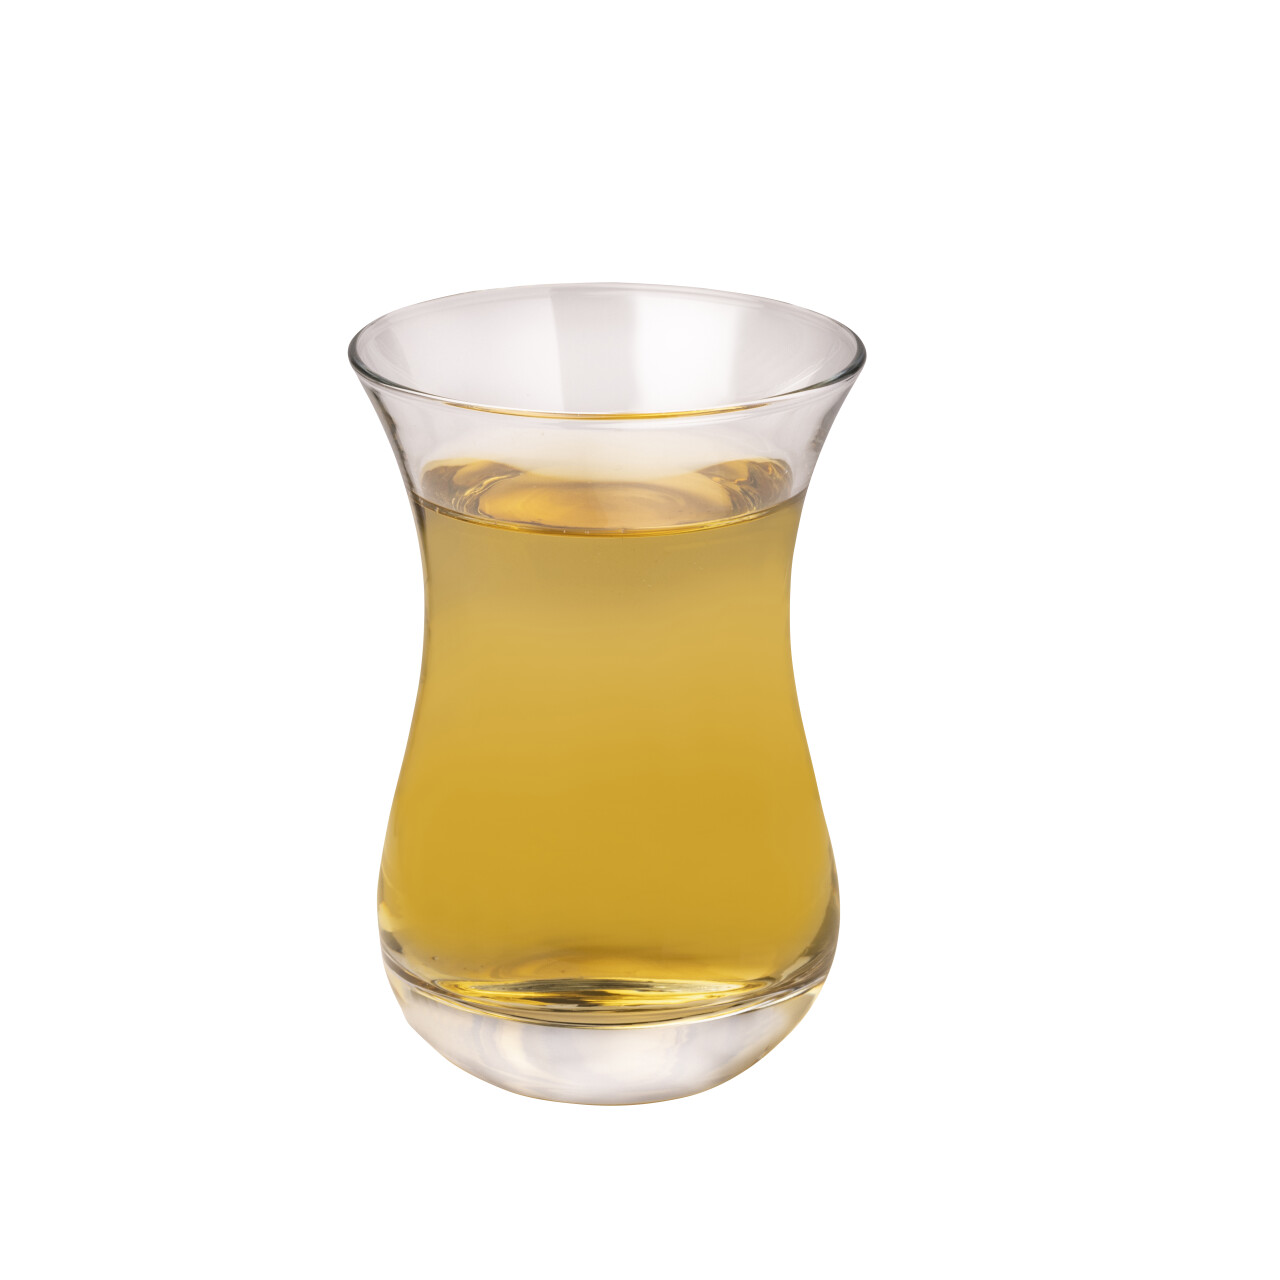 Türkisches Teeglas, 0,15 l